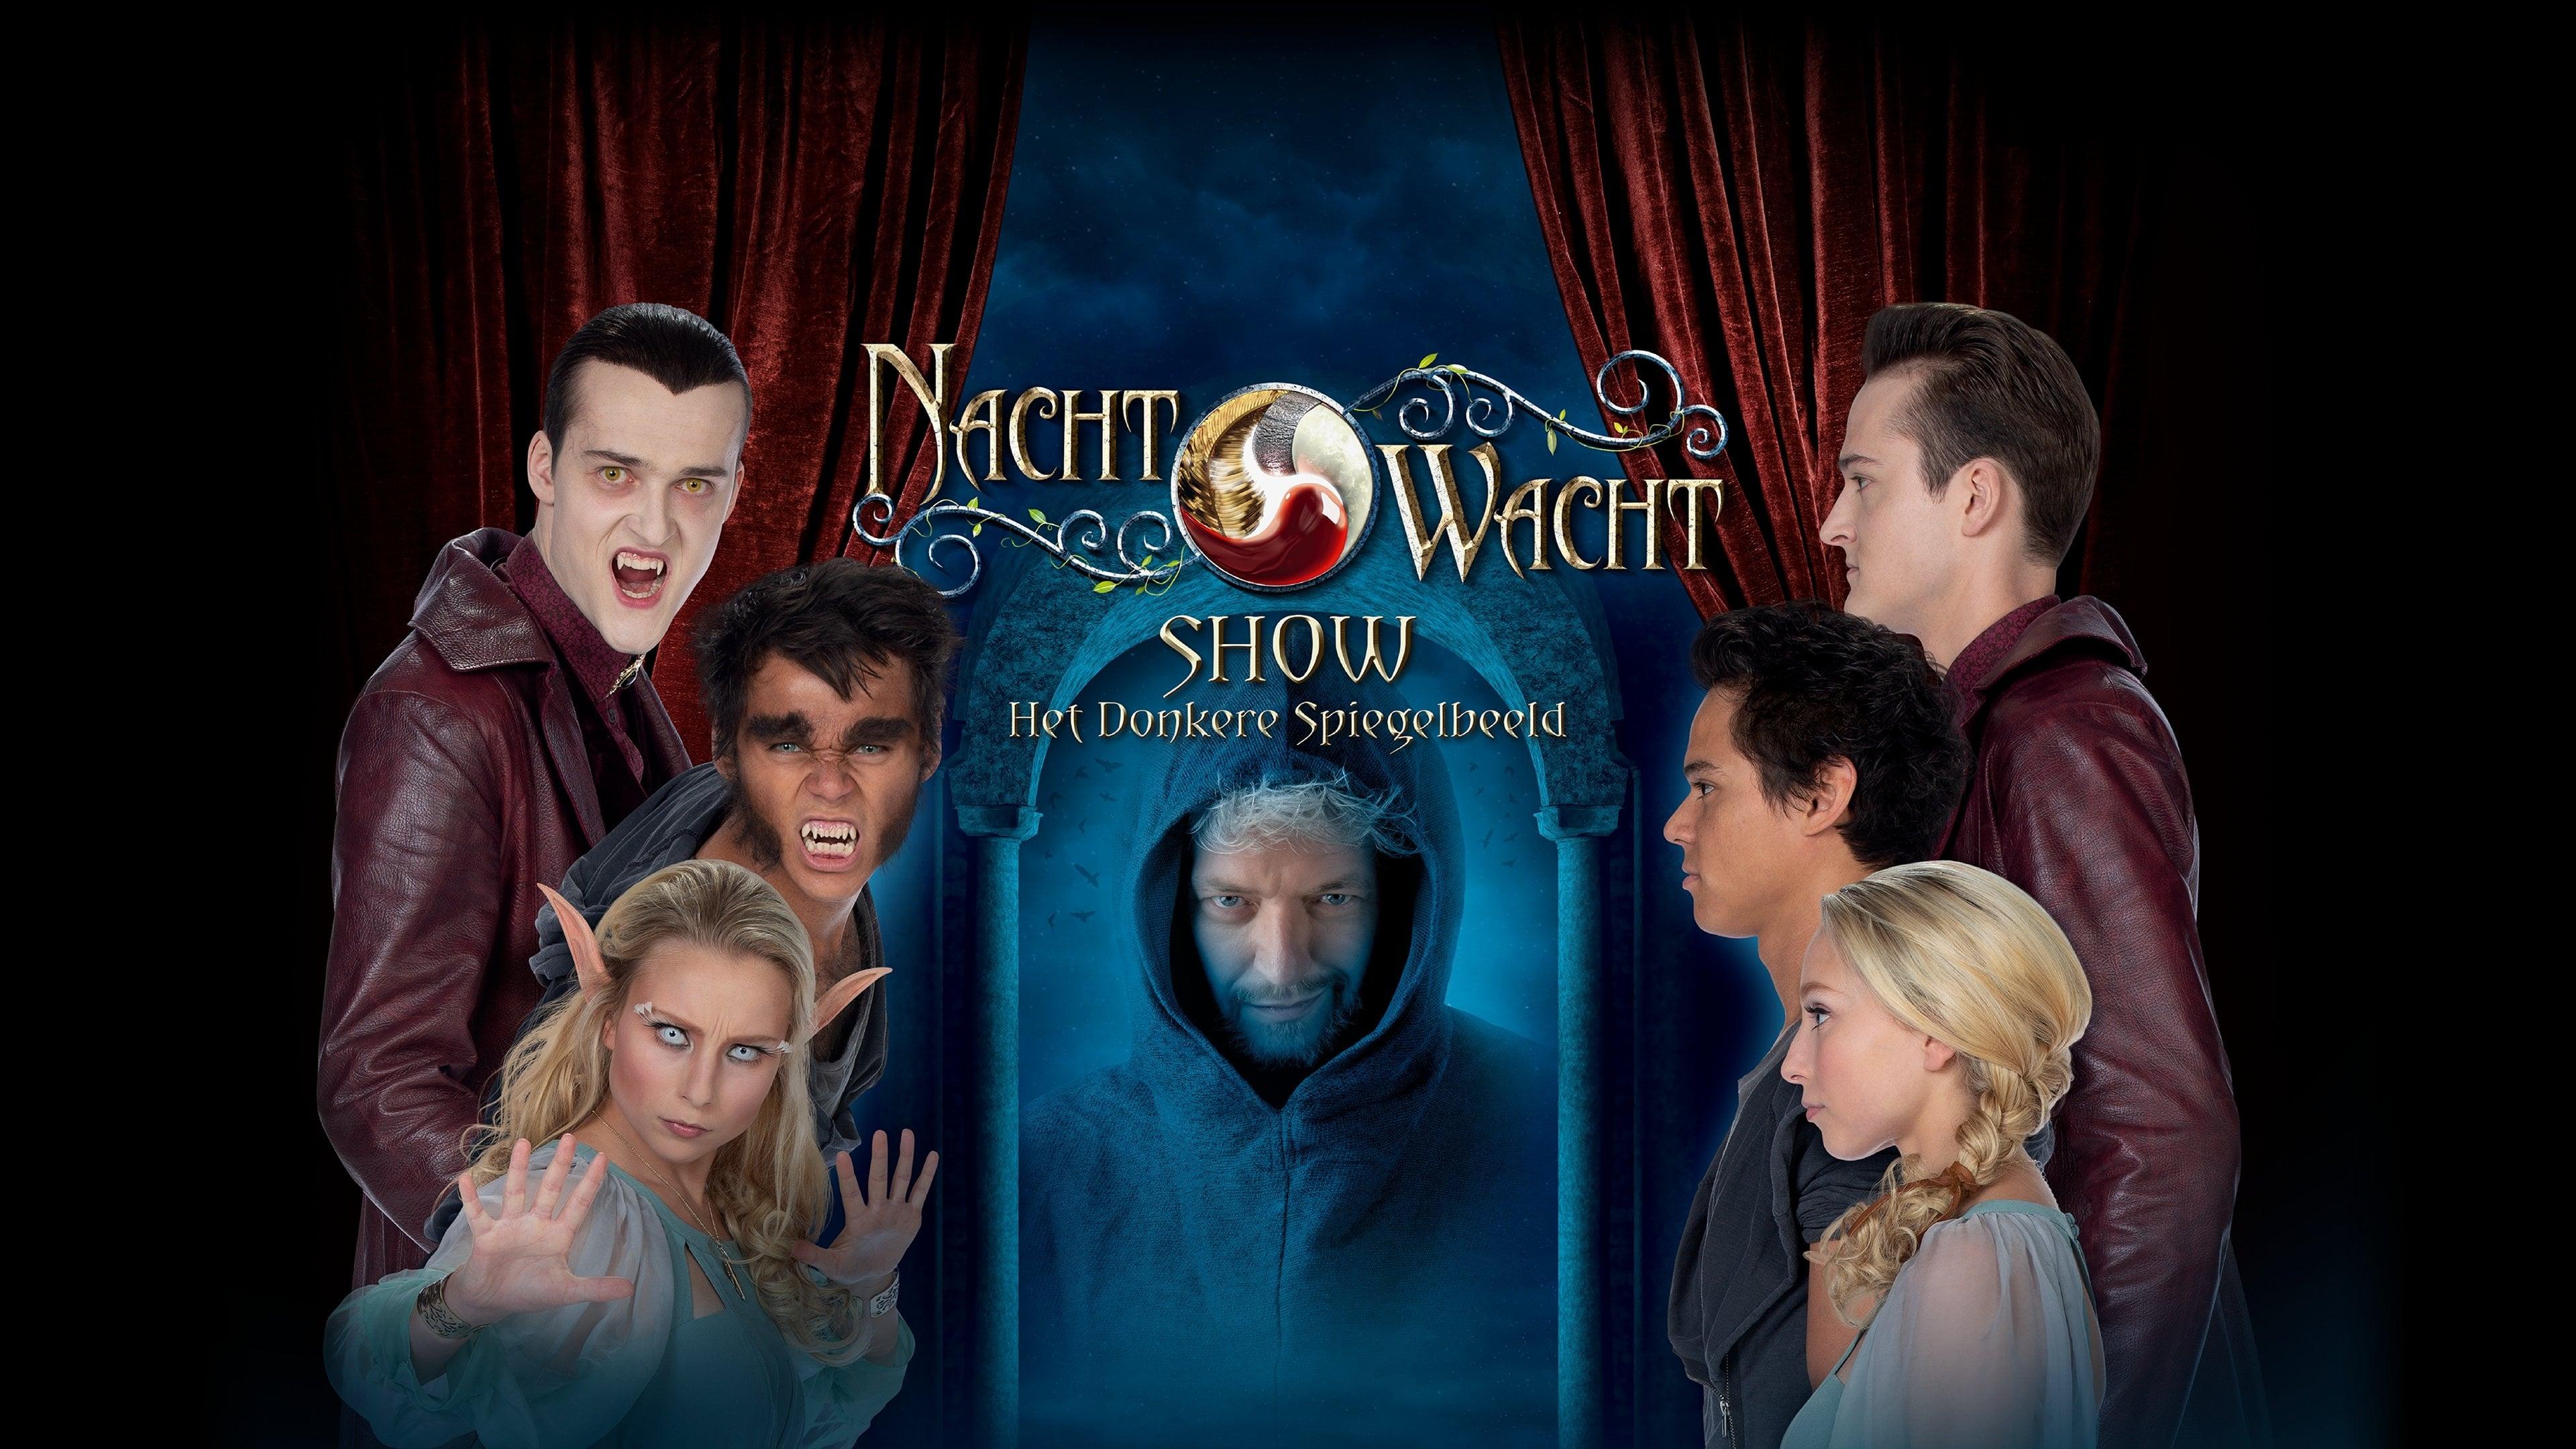 Nachtwacht Show: Het Donkere Spiegelbeeld backdrop